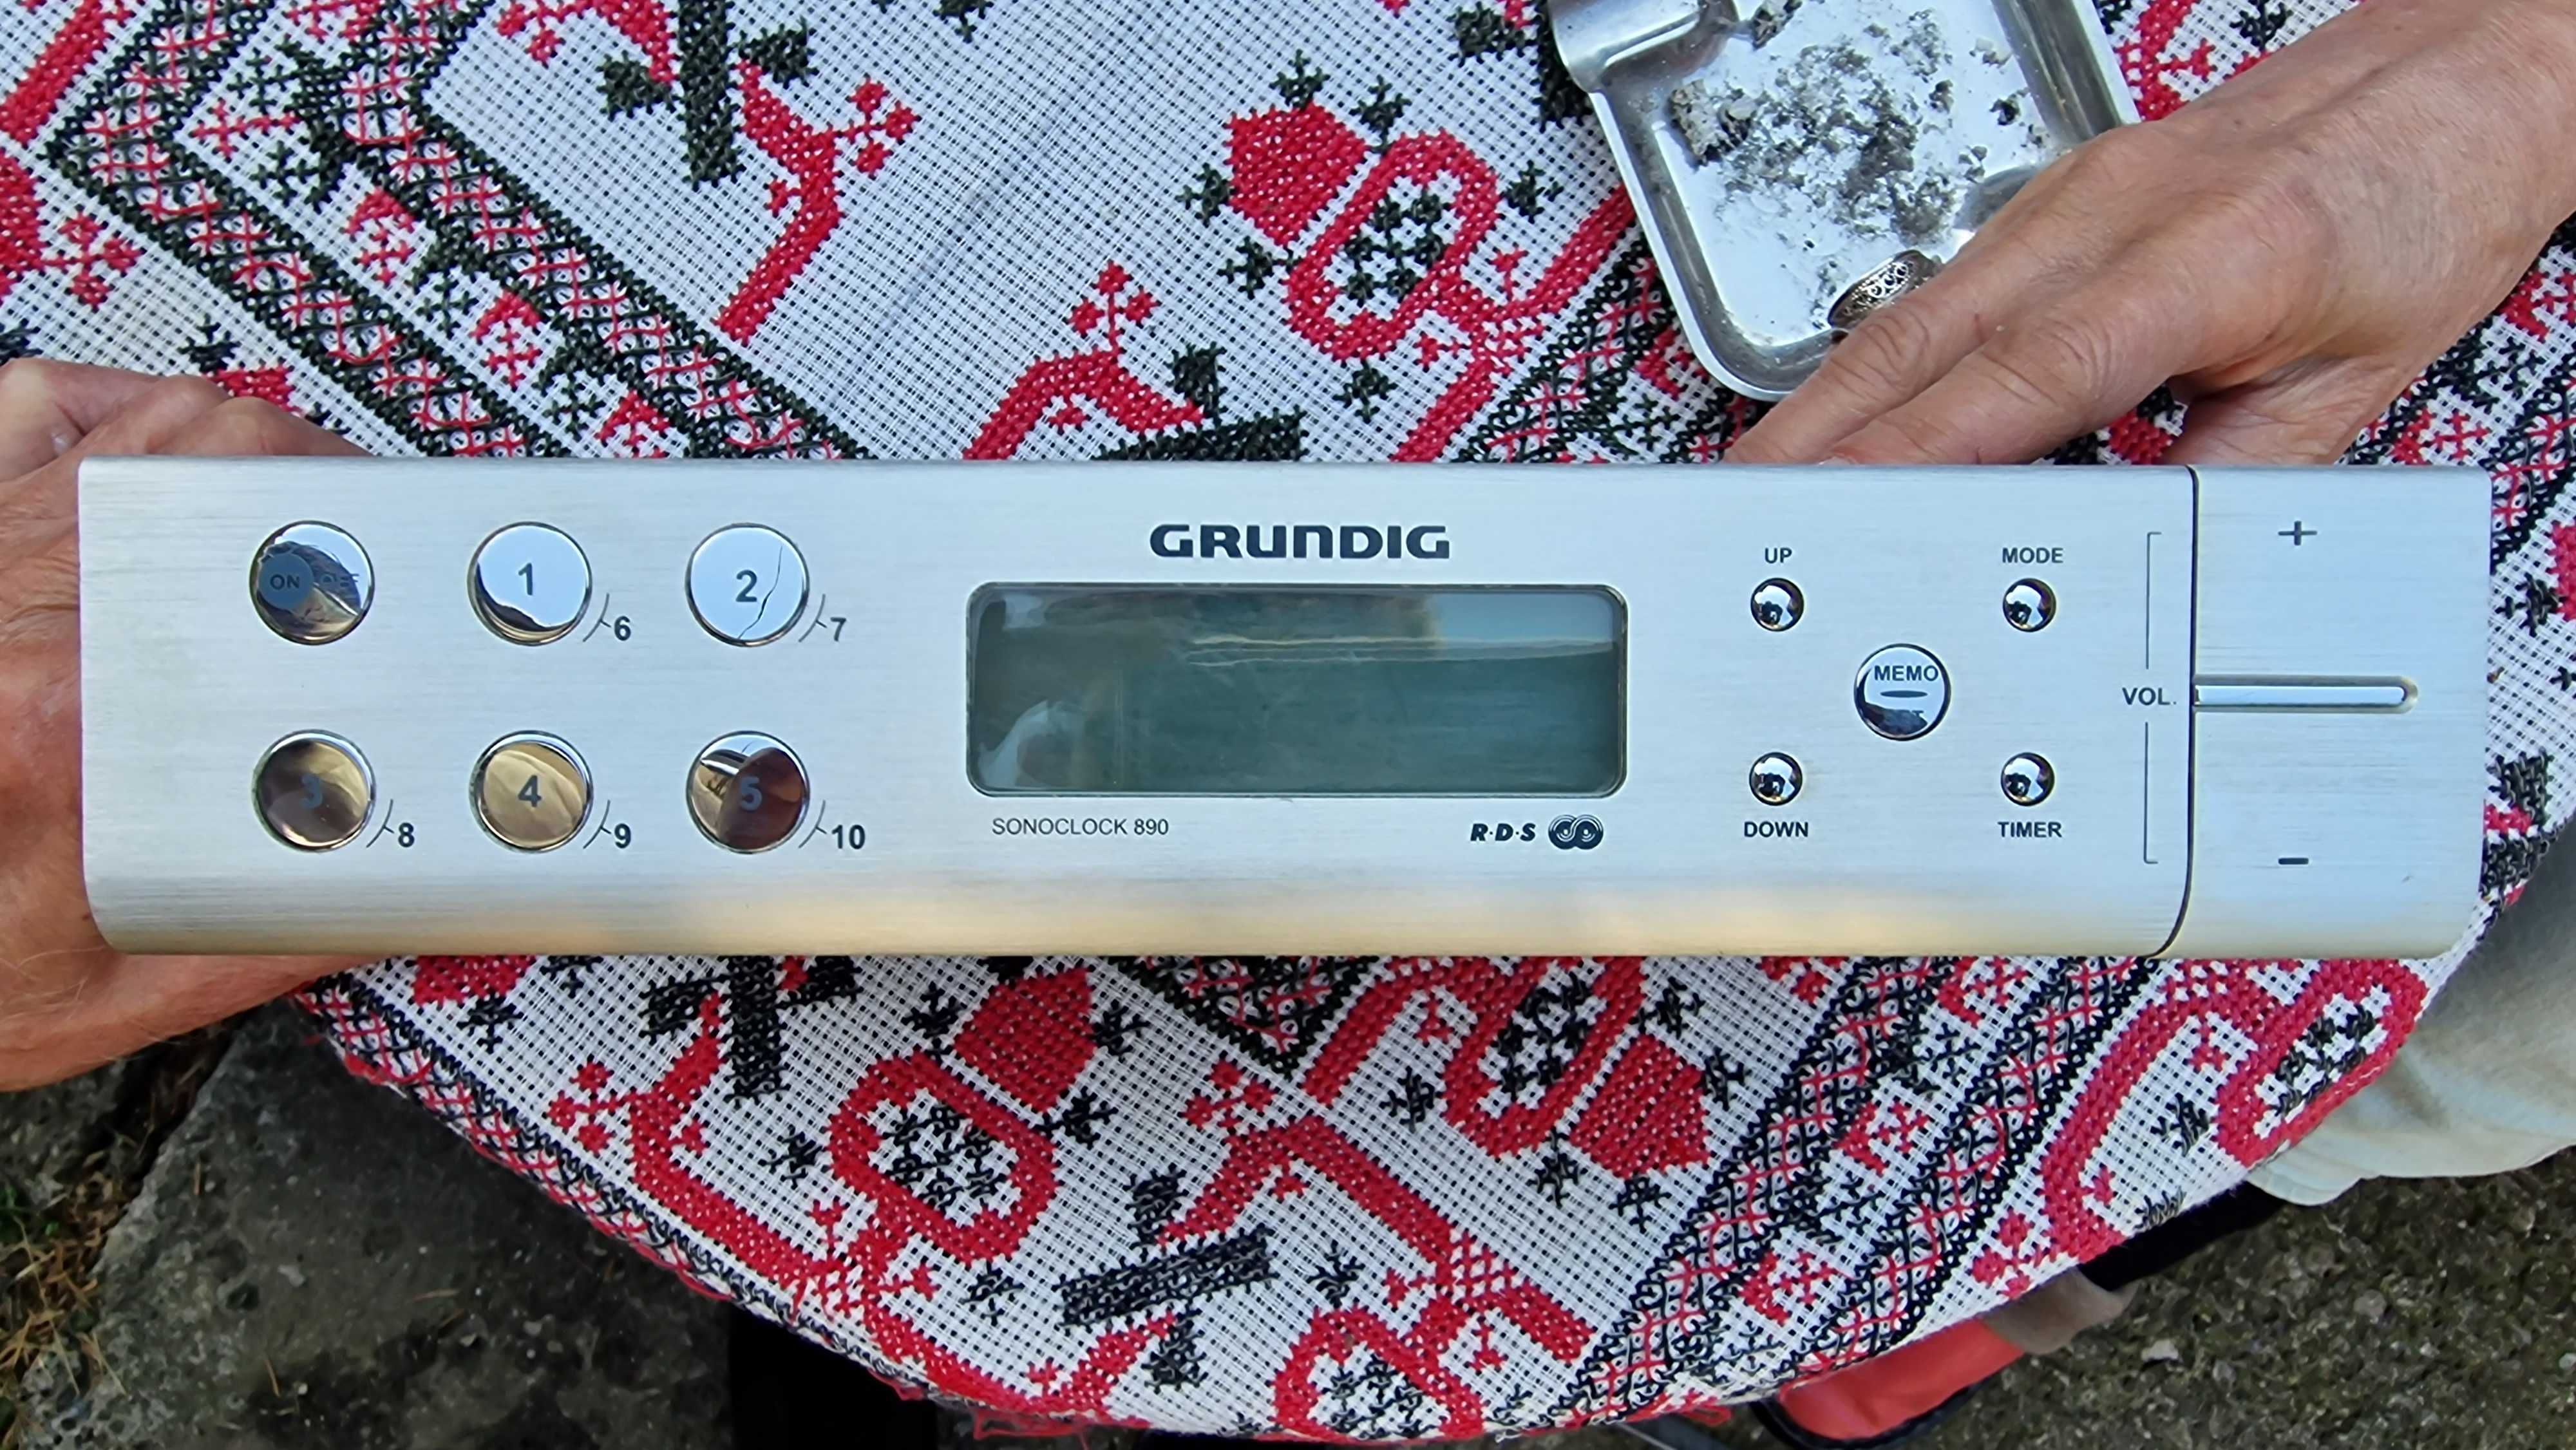 Aparat radio cu memorie Grundig Sonoclock 890 aluminiu